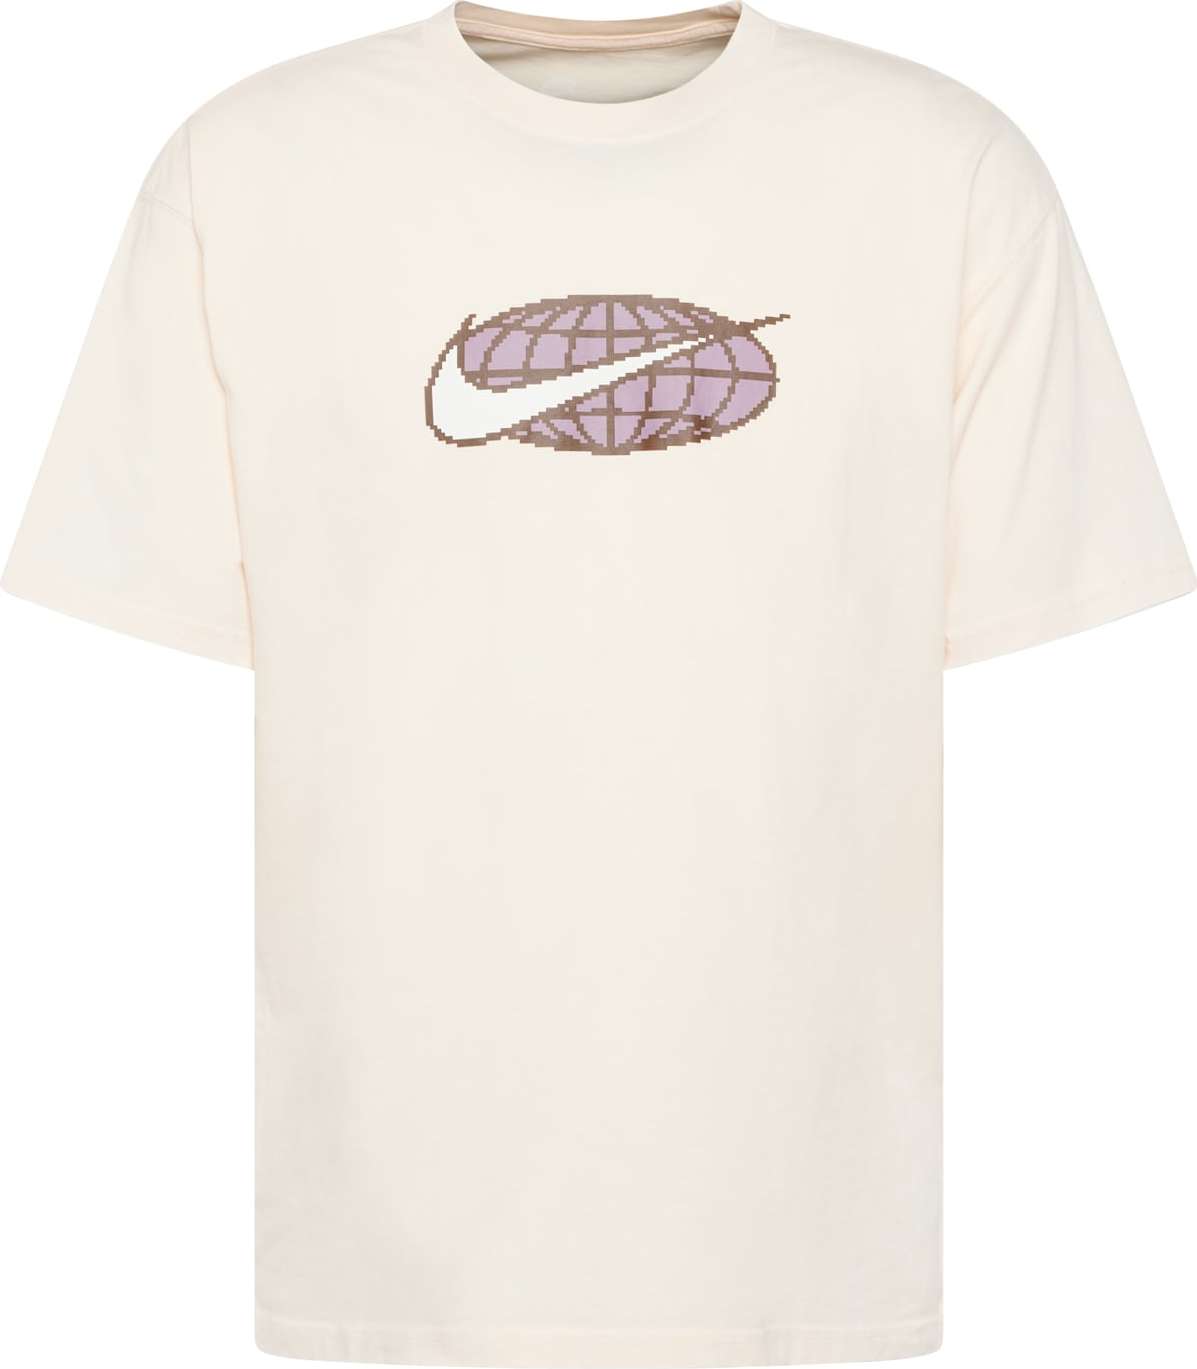 Tričko Nike Sportswear starobéžová / mokka / světle fialová / bílá